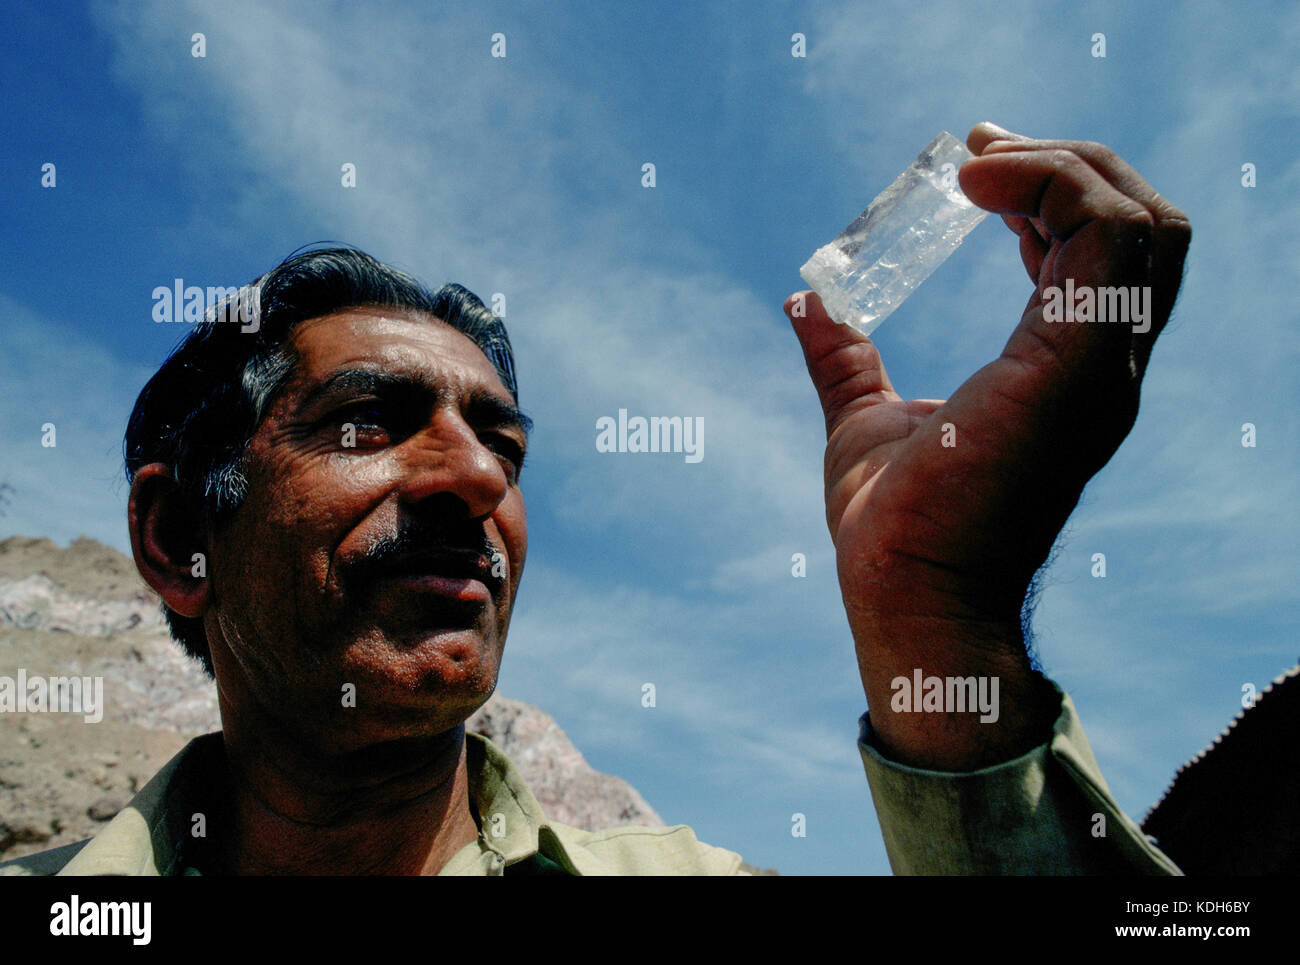 Un travailleur de la mine de sel Kalabach détient un morceau de sel gemme transparente entre les mines, près de Kalabach, au Pakistan. Banque D'Images